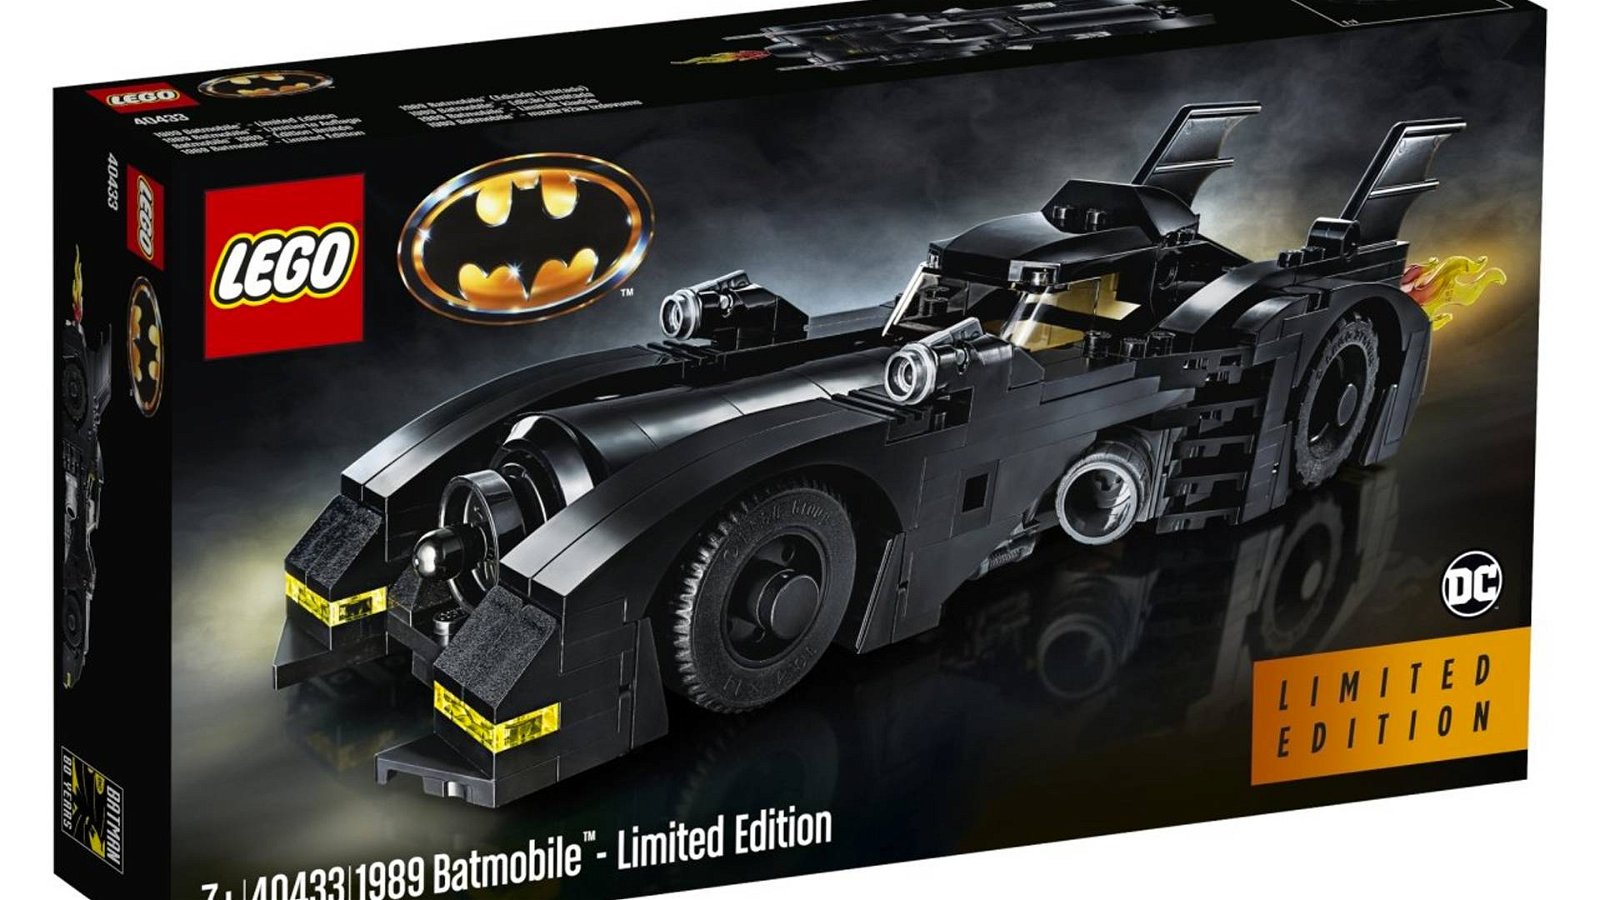 Immagine di 40433 - 1989 Batmobile Limited Edition: ecco le foto ufficiali della Batmobile Lego